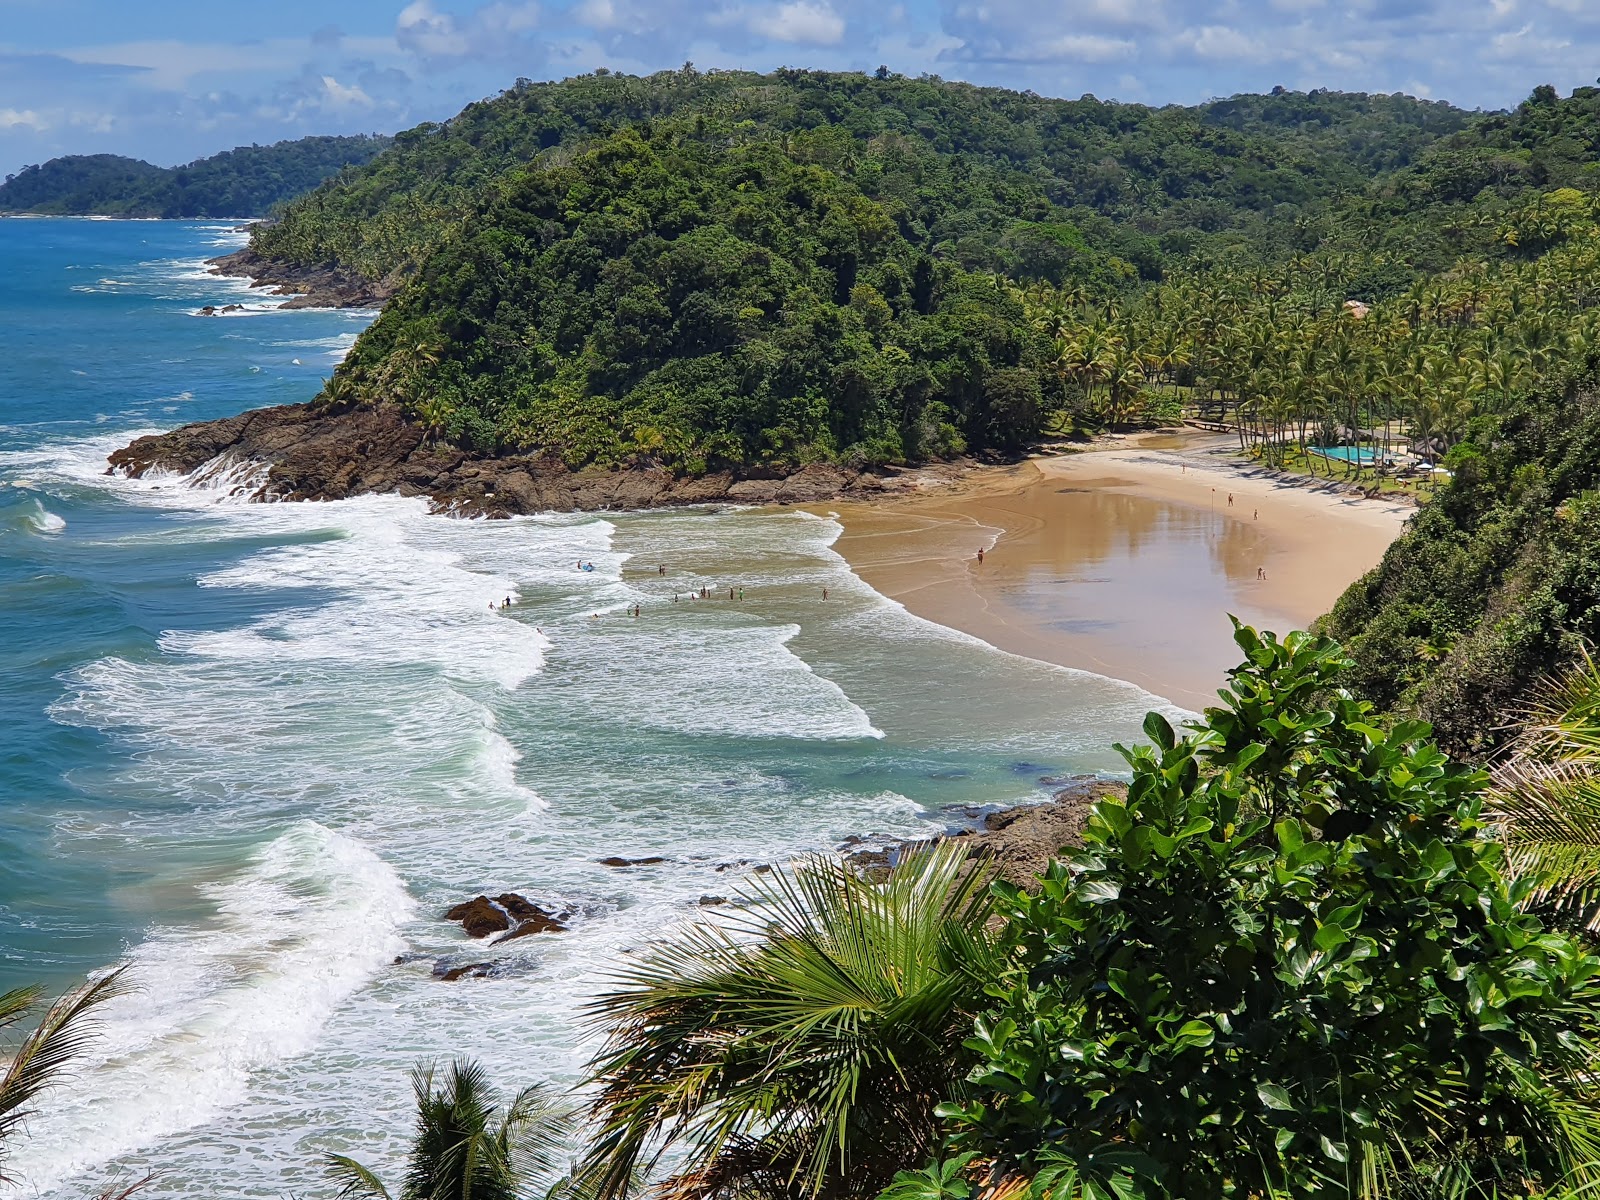 Fotografie cu Praia de Sao Jose - locul popular printre cunoscătorii de relaxare